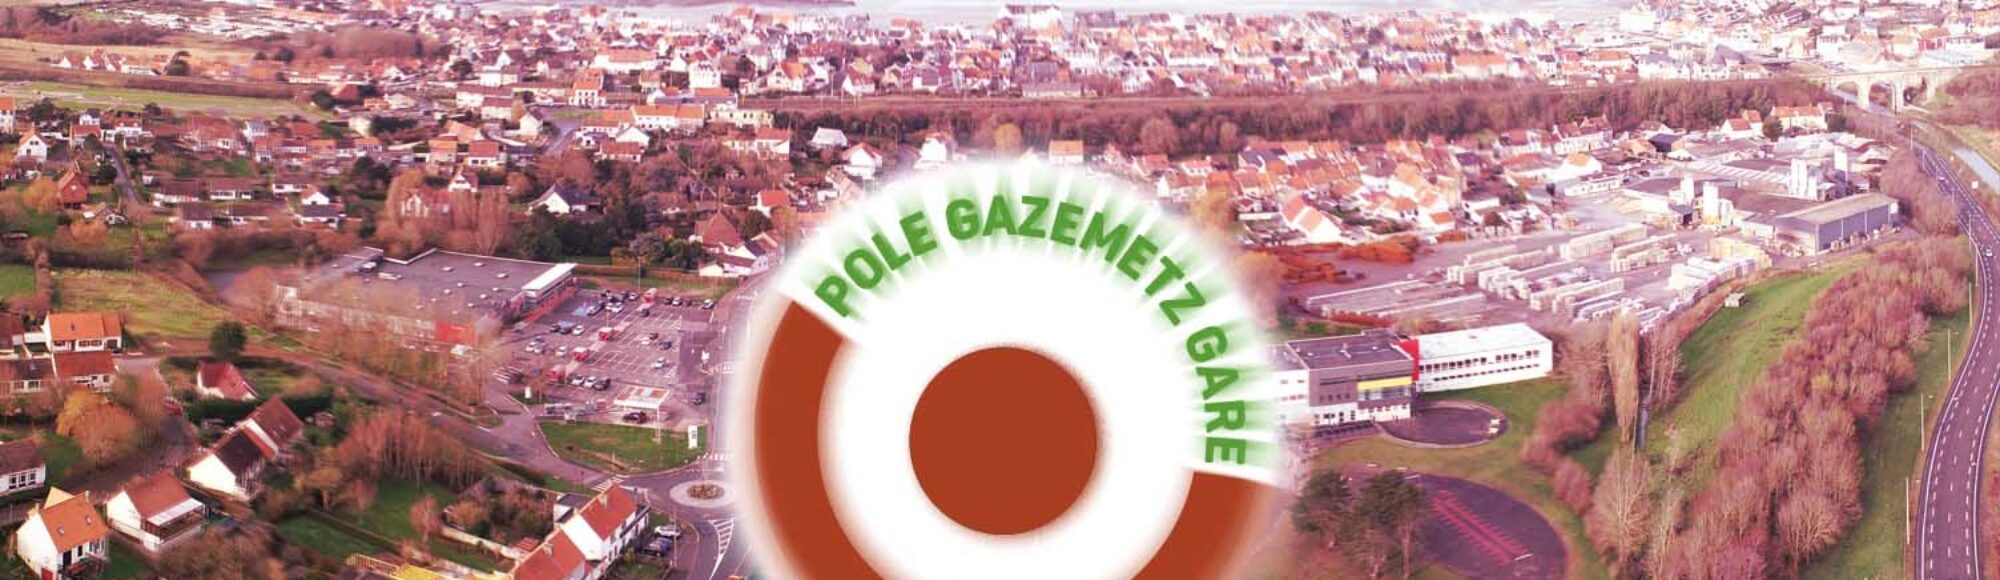 2023requalification urbaine pole gazemetz gare de Wimille- wimereux dans Boulonnais , le pas de calais